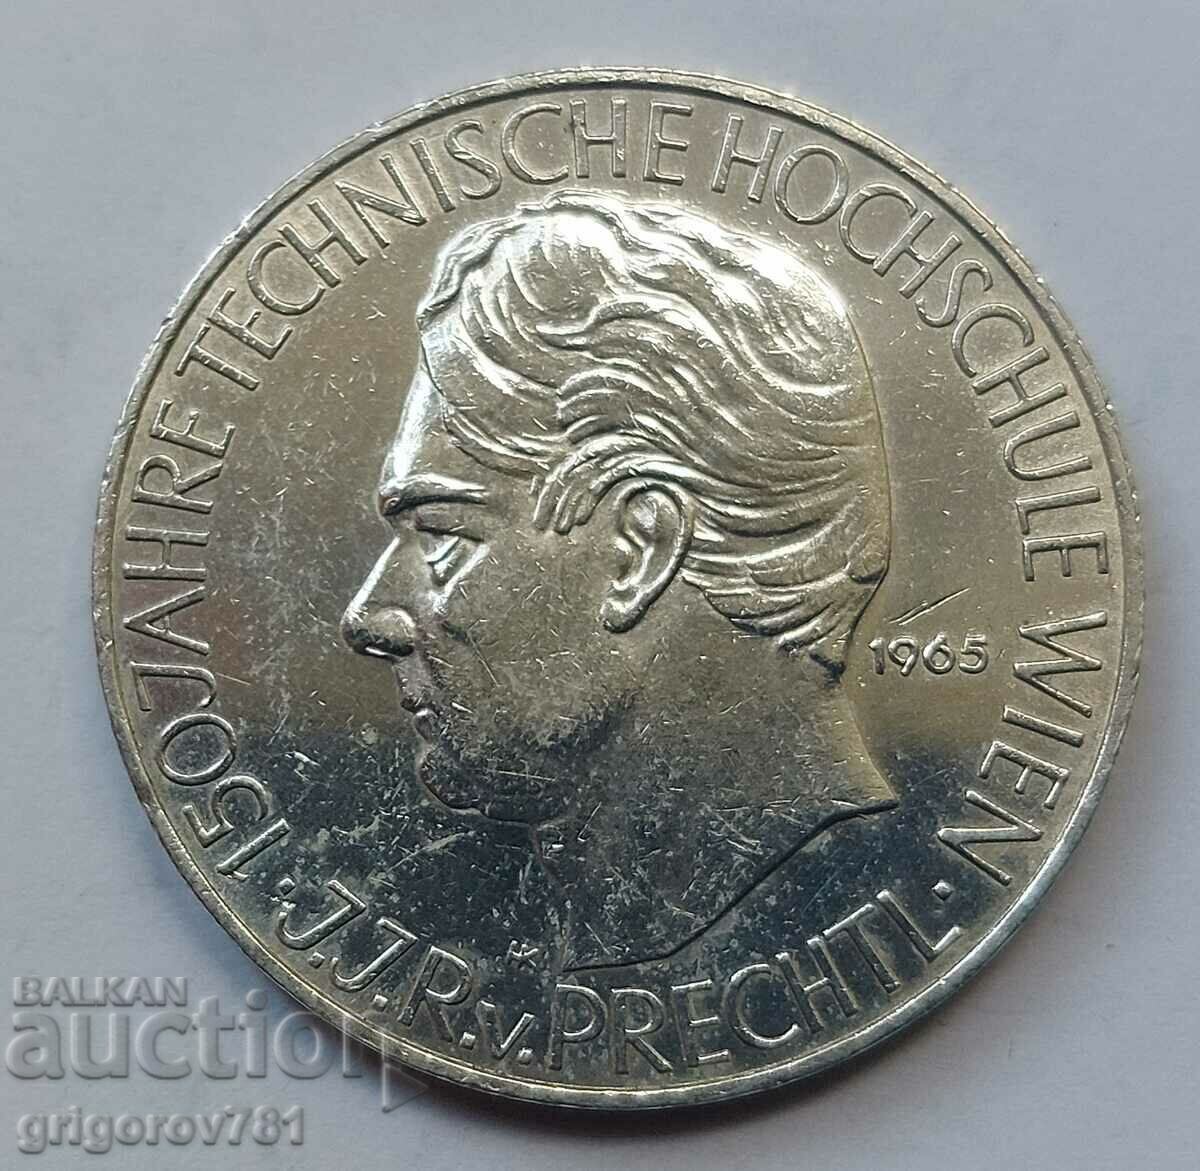 25 Shilling Silver Αυστρία 1965 - Ασημένιο νόμισμα #24